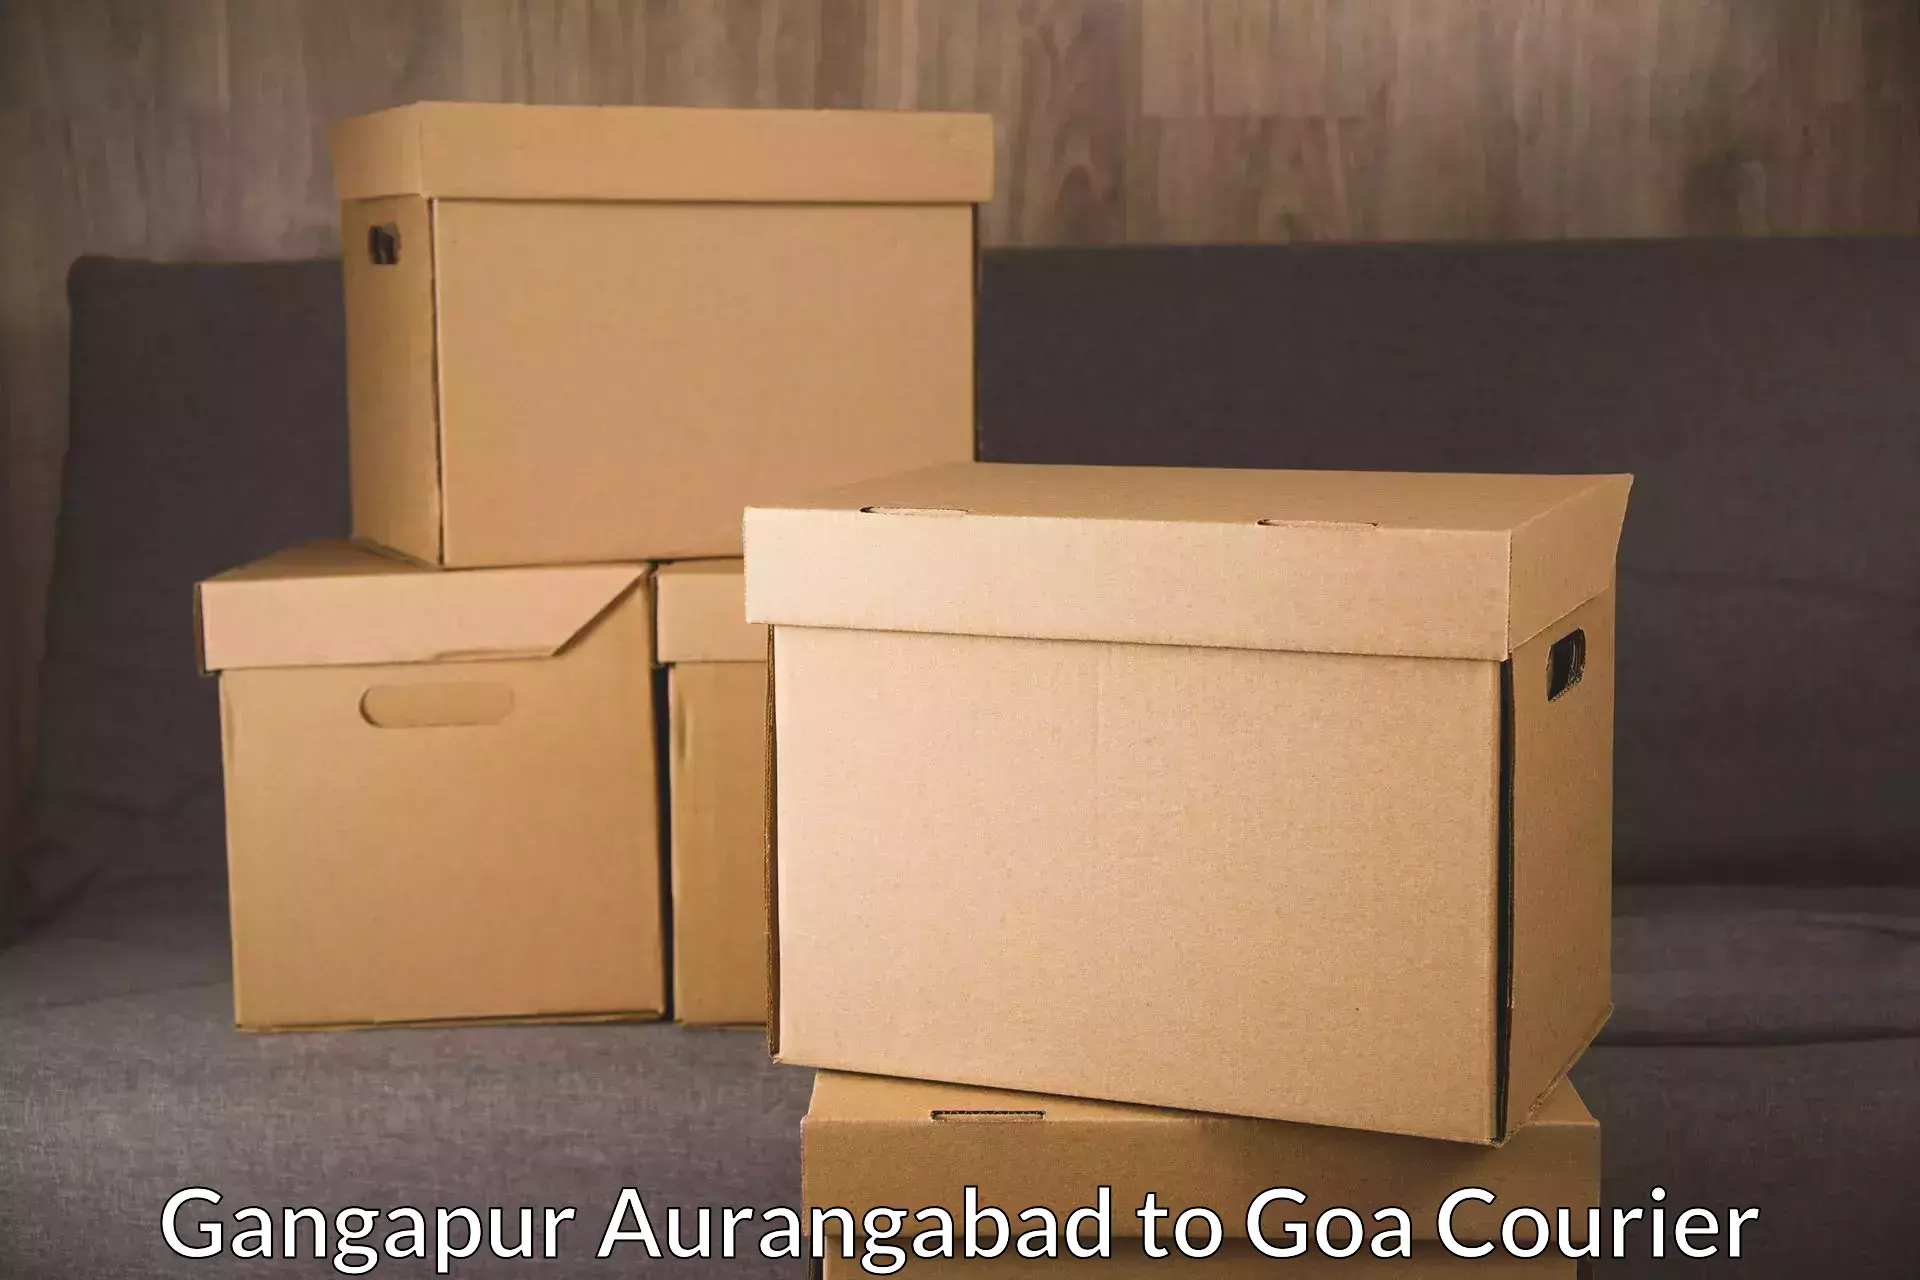 Next day courier Gangapur Aurangabad to Bicholim